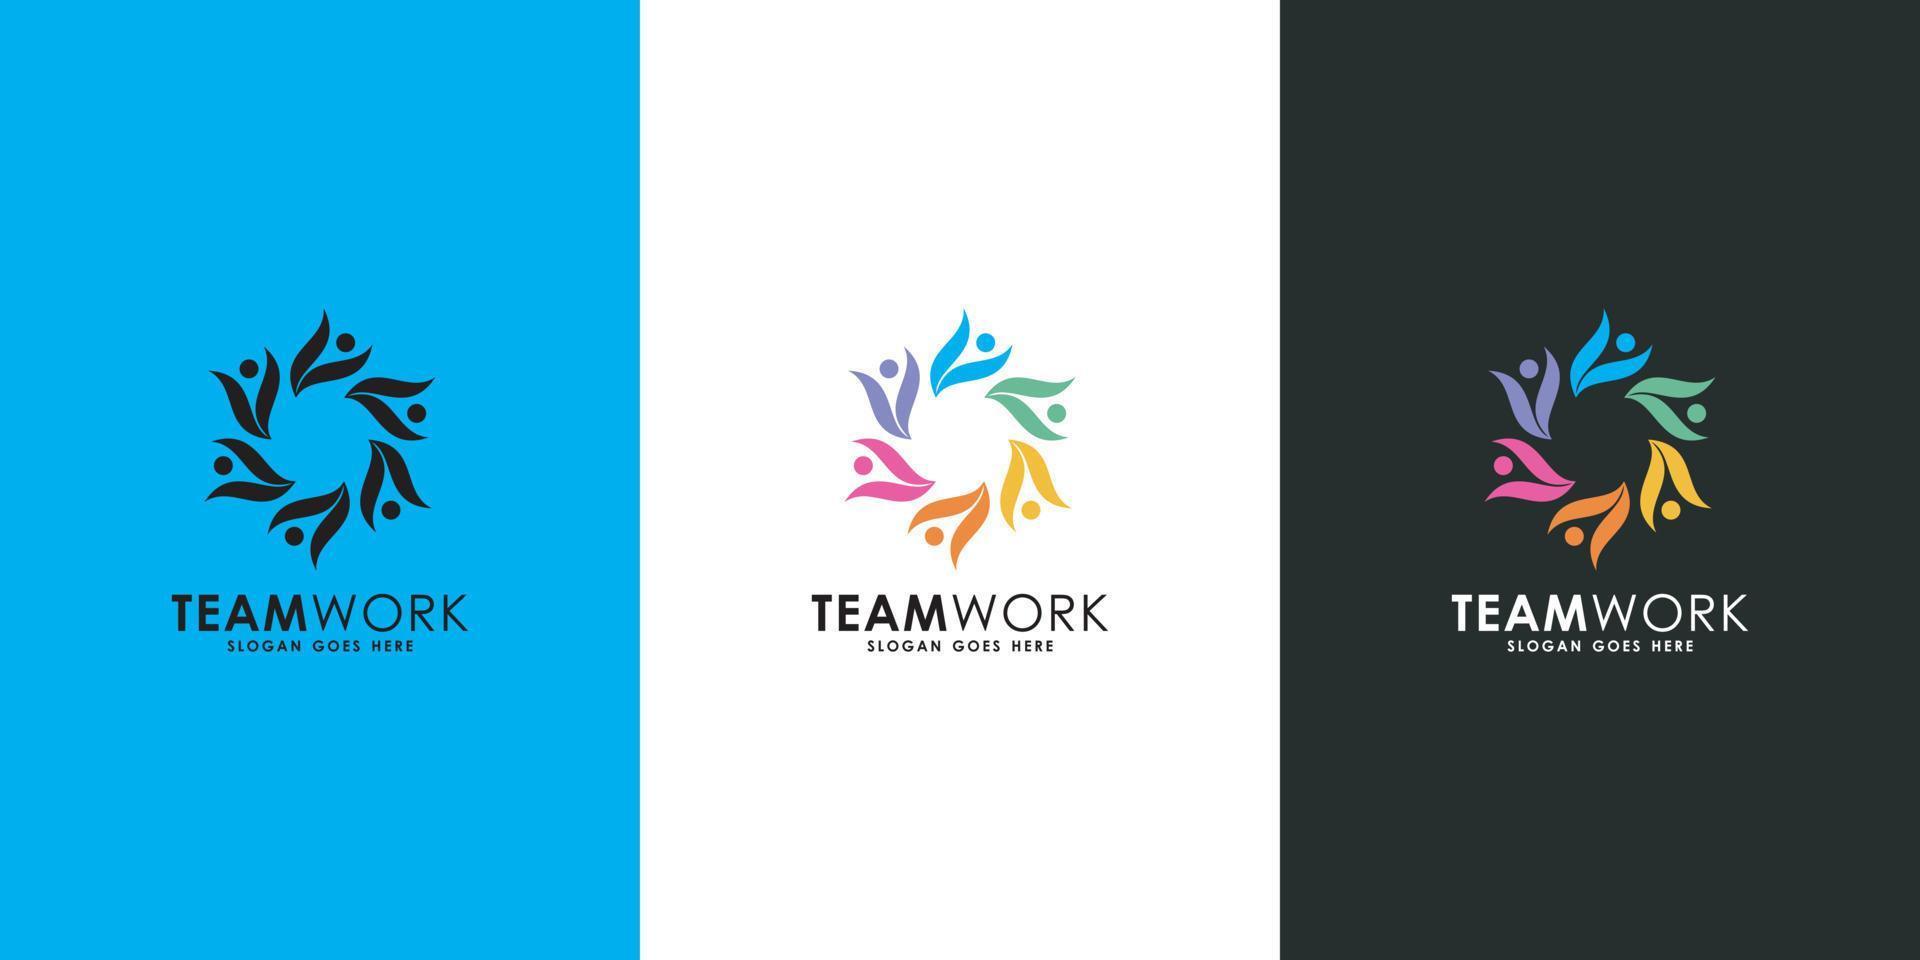 Teamwork-Menschen-Community-Logo-Design vektor